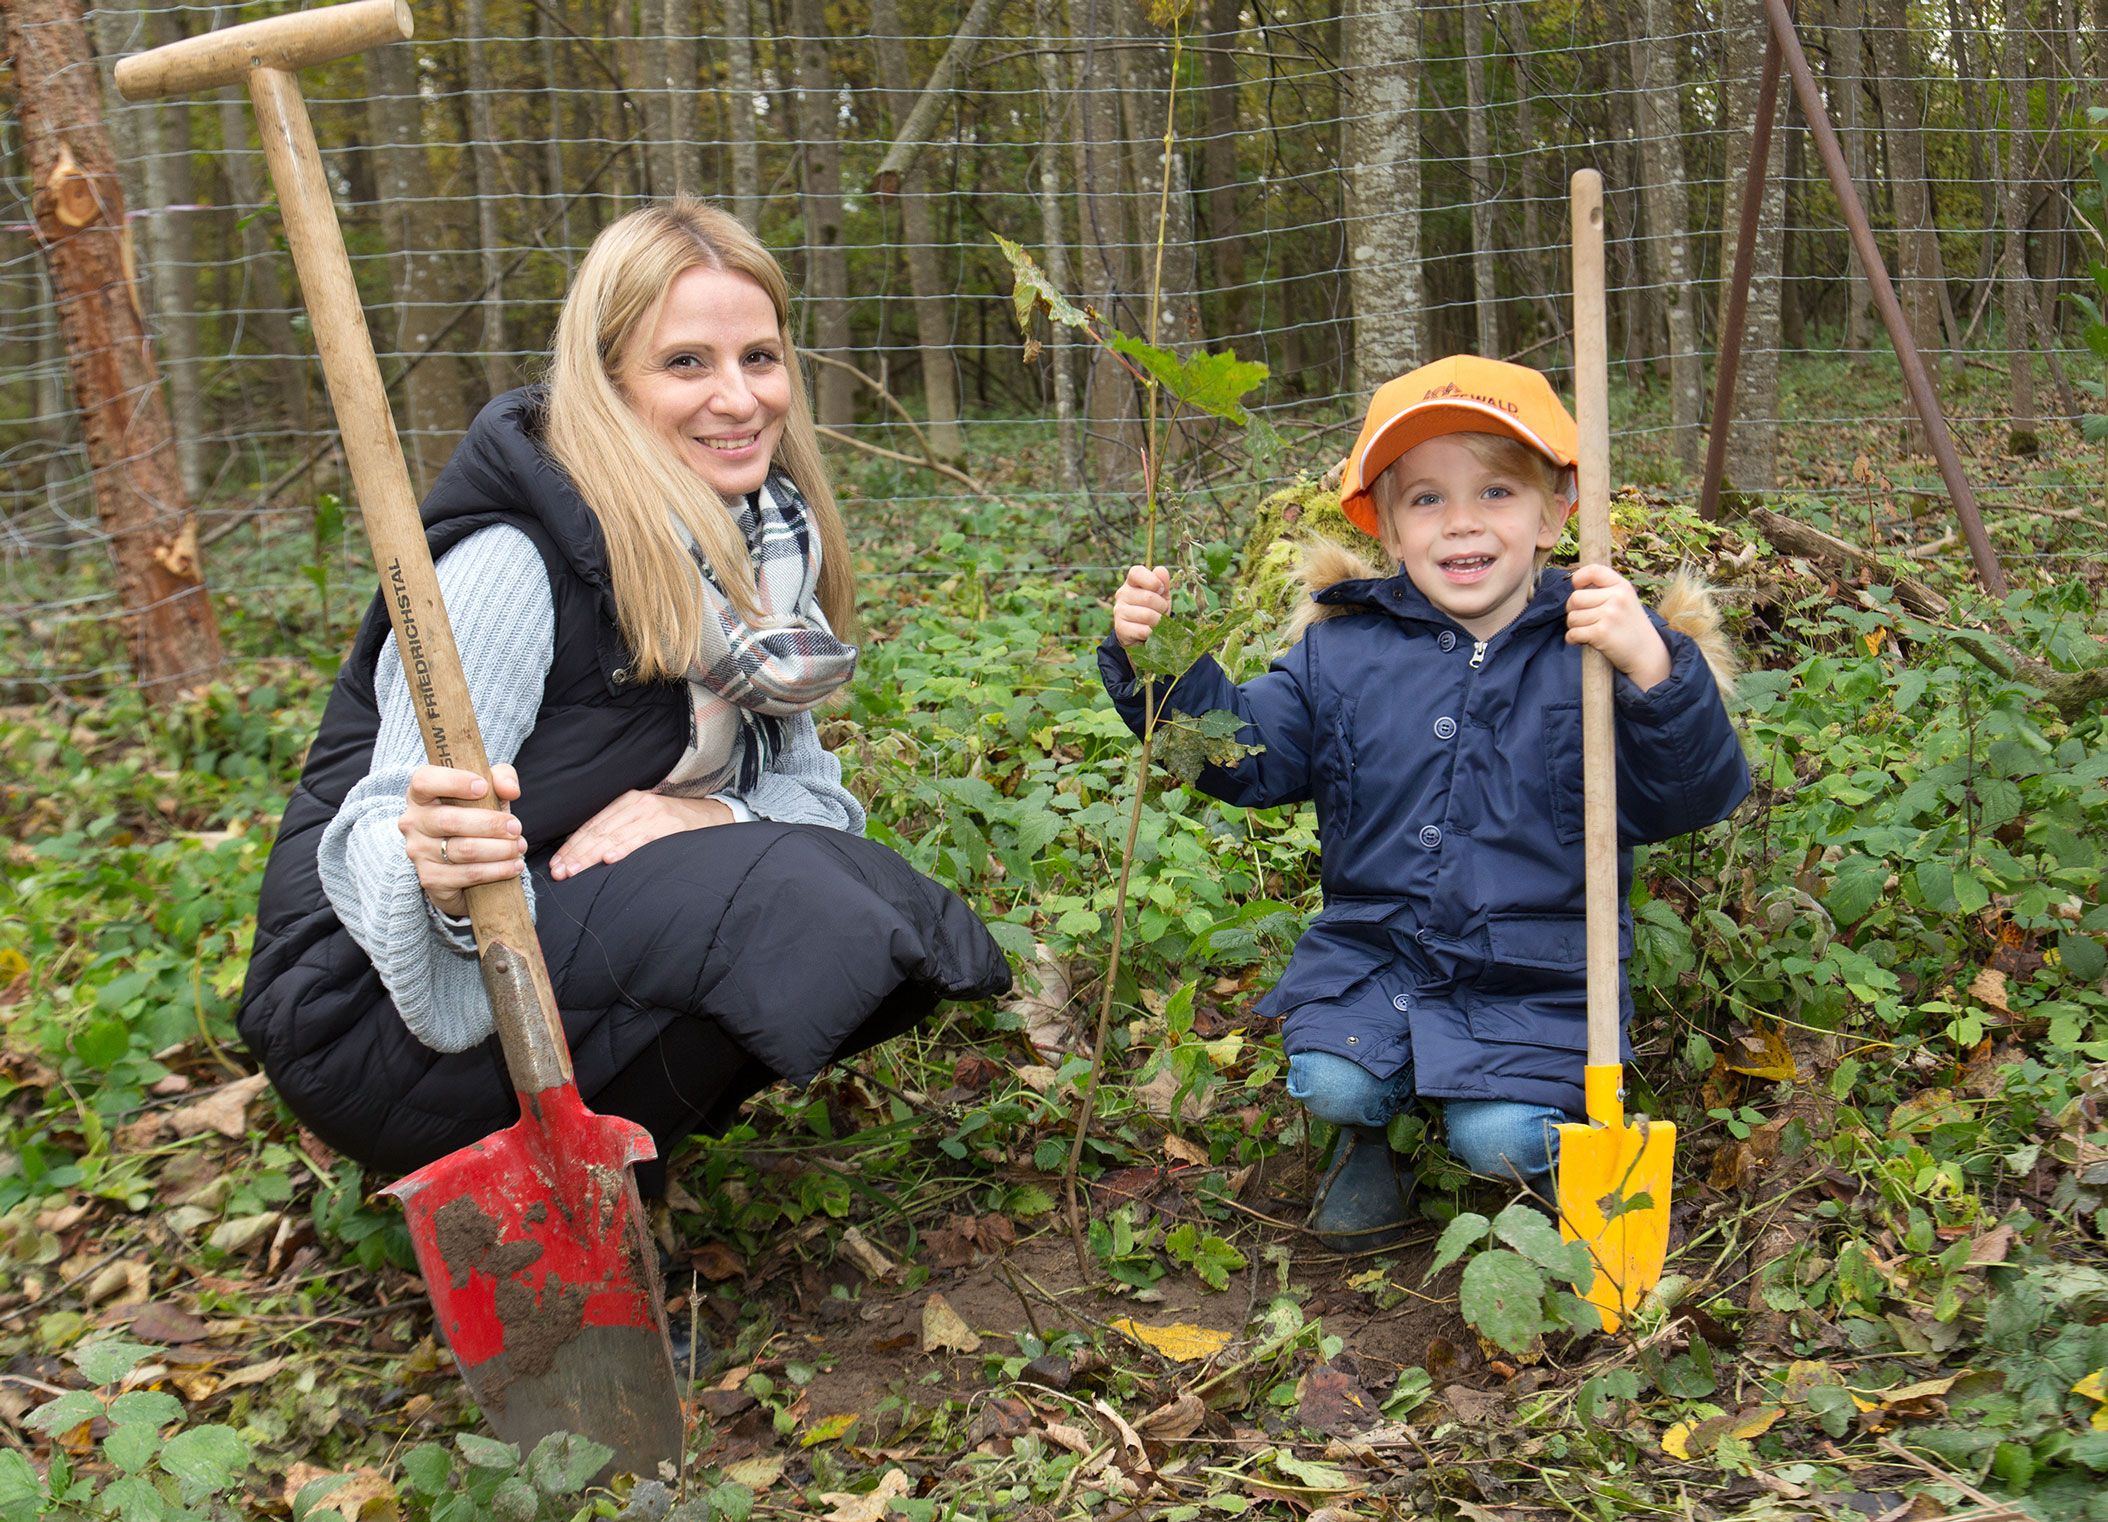 Kristina Reicherzer und ihr Sohn Pius pflanzten gemeinsam einen Baum ein.